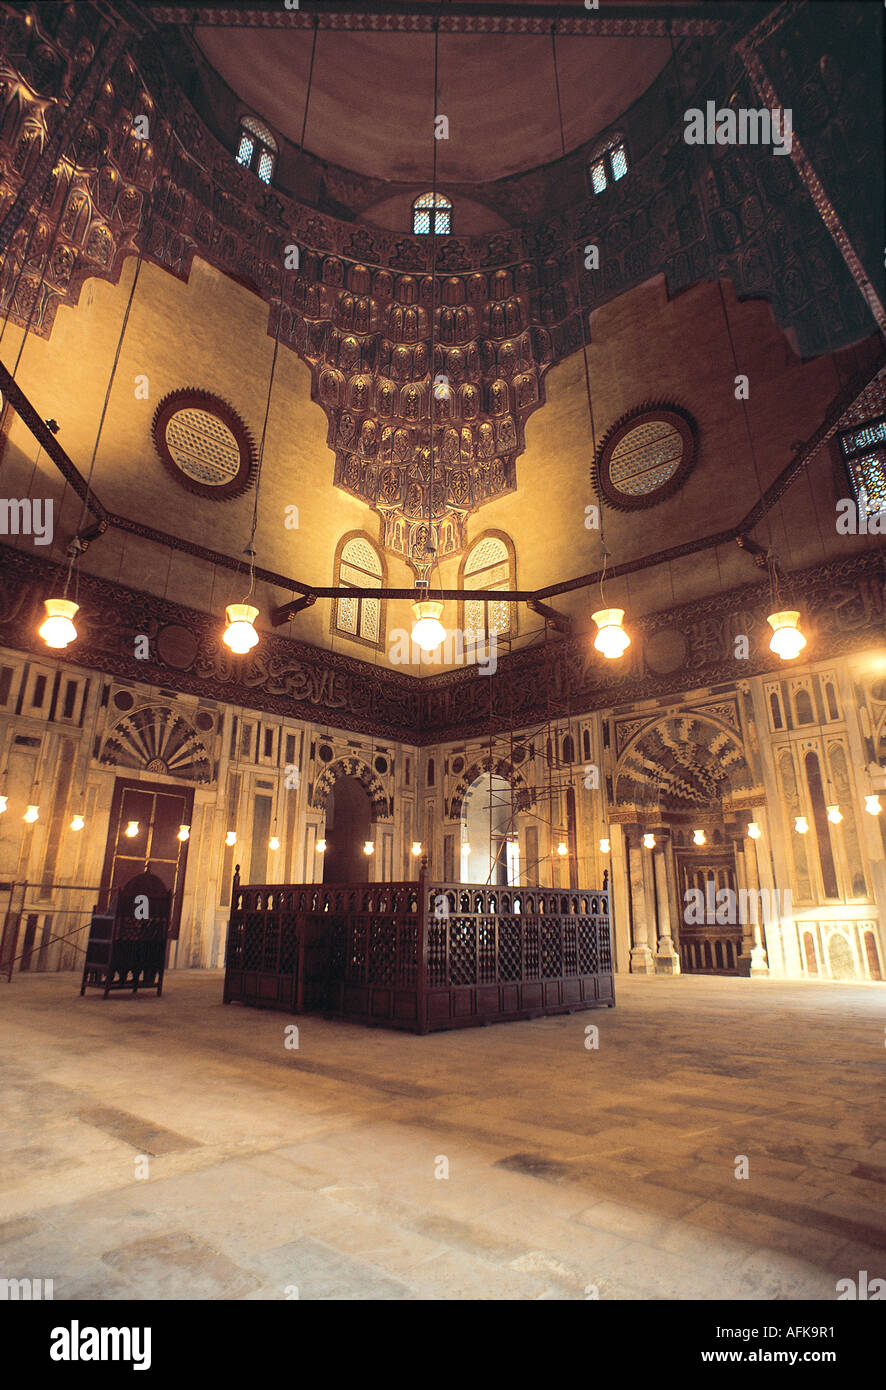 Innere des Sultan Hassan Mosque zeigen Details der Architektur in der Kuppel Kairo Ägypten Stockfoto